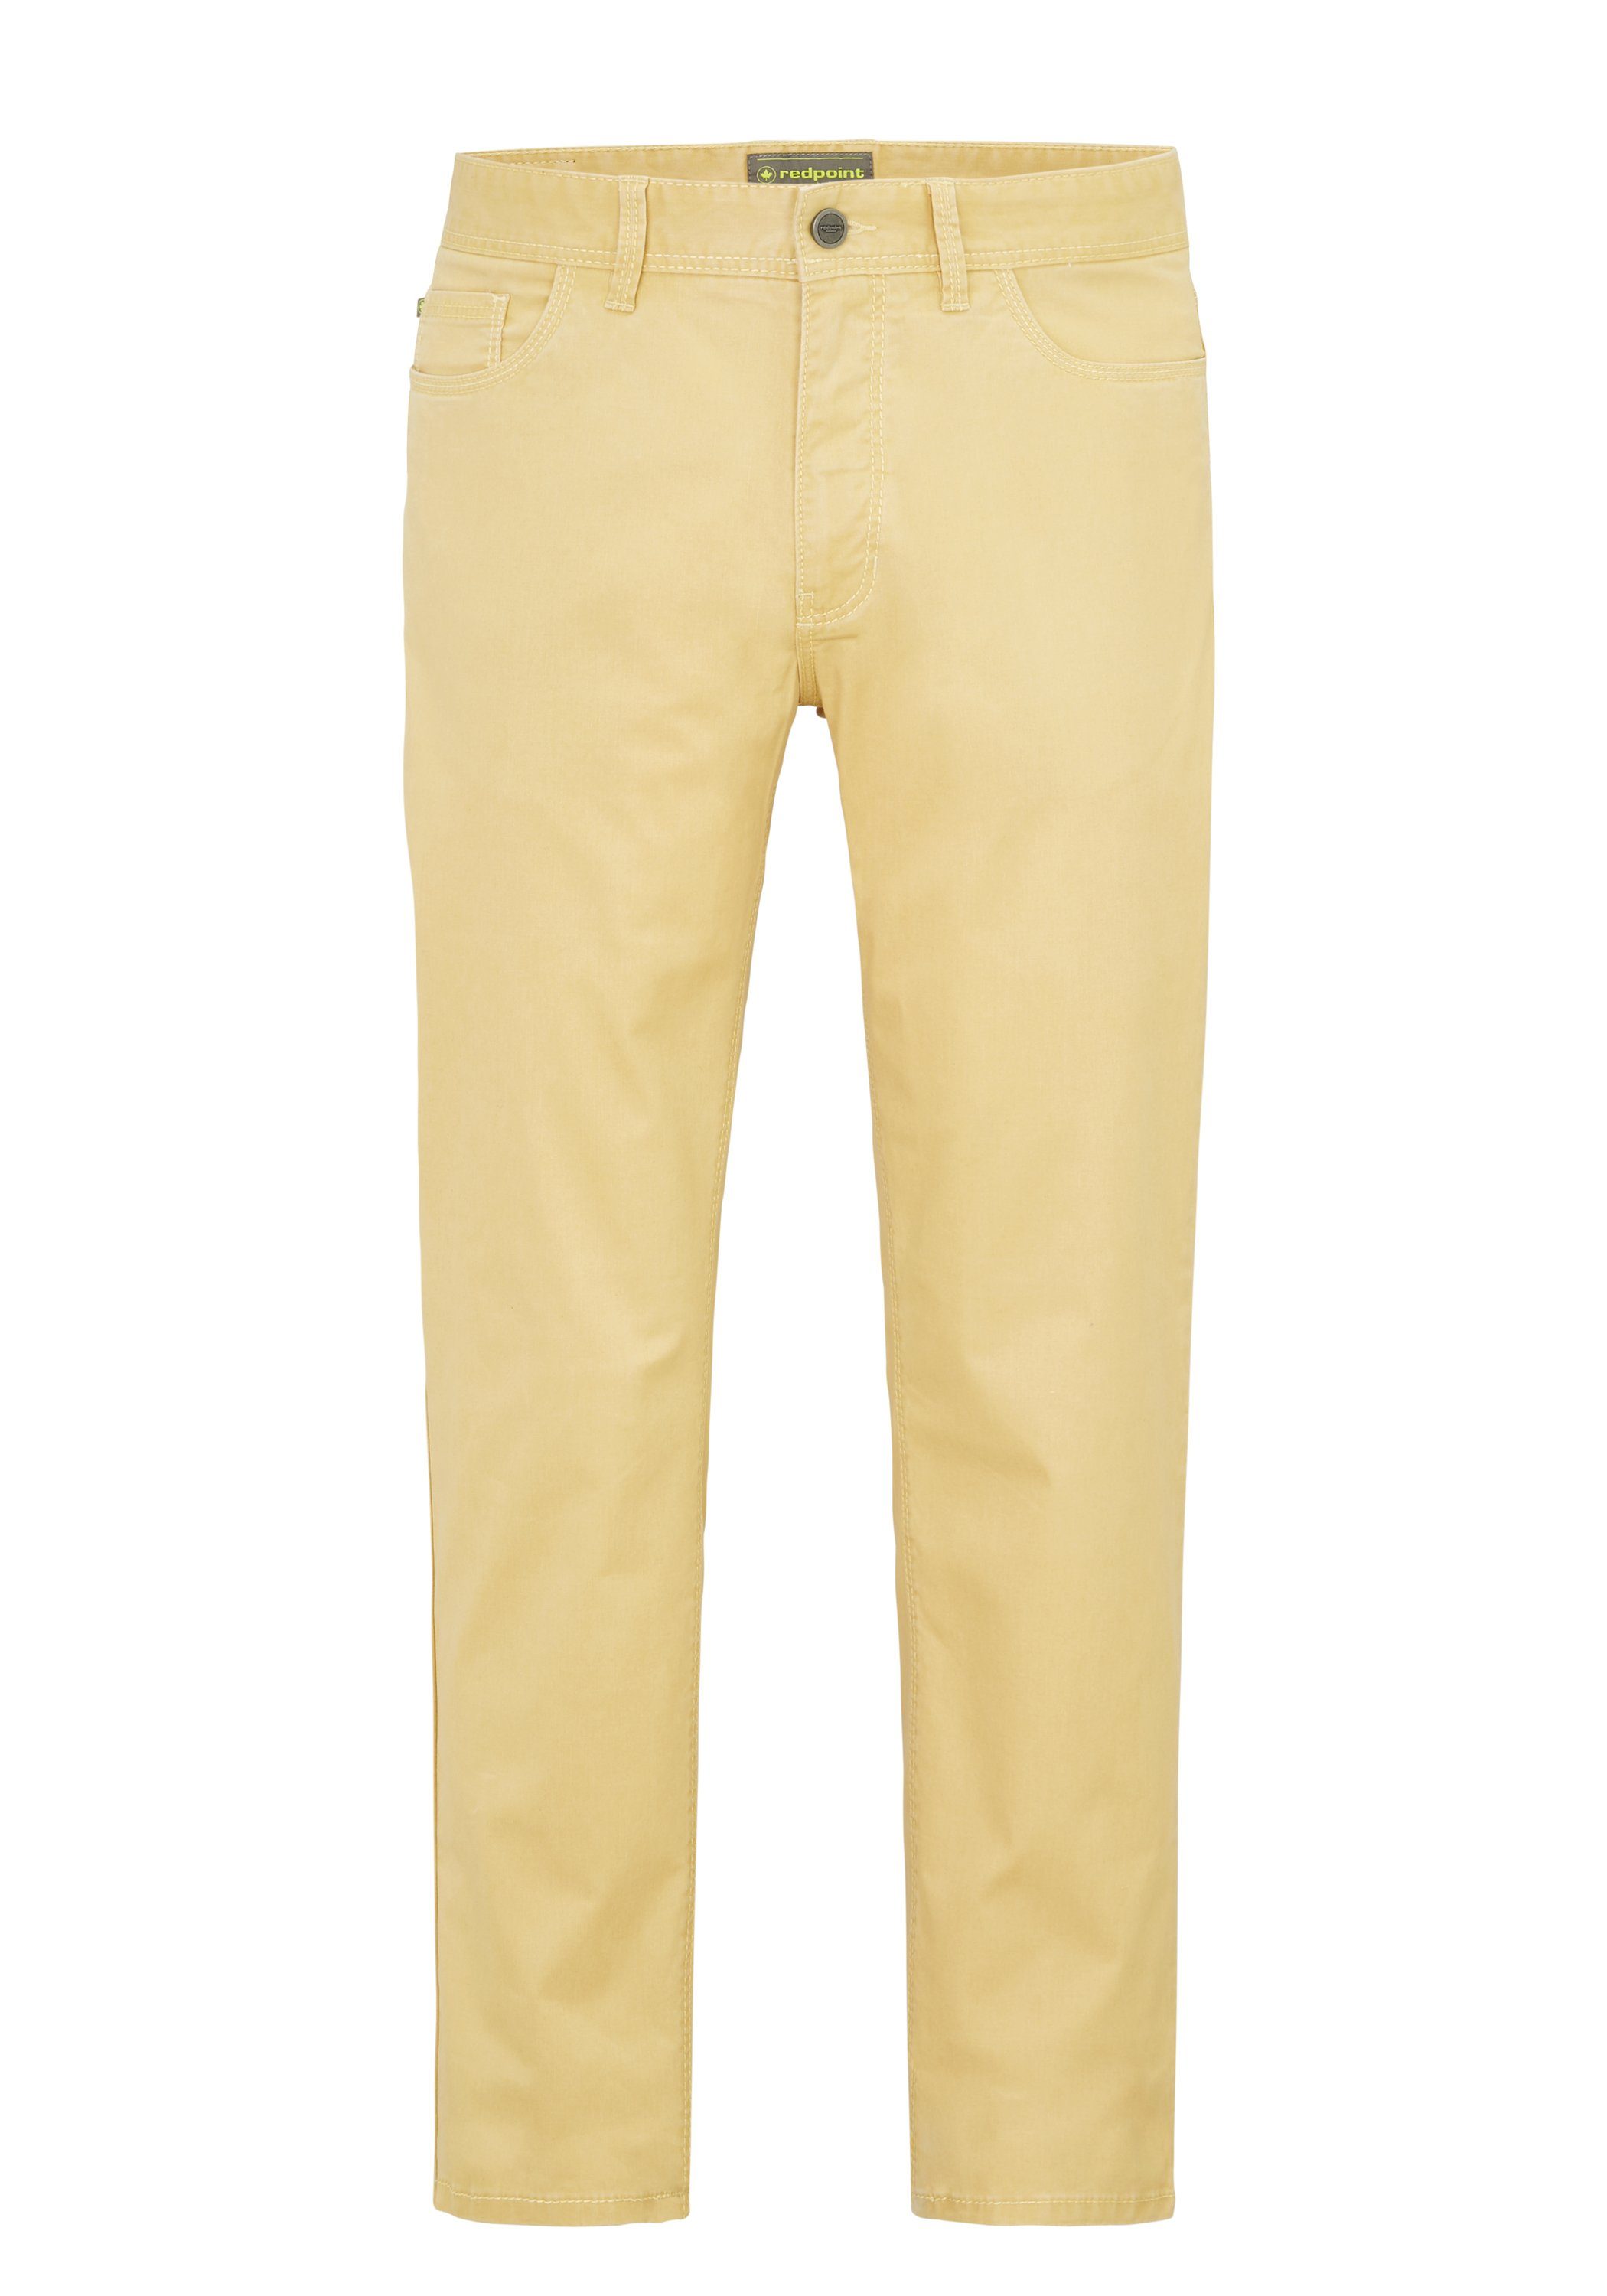 Pocket Redpoint yellow stretch MILTON aus Stoffhose nachaltiger super 5 Baumwolle